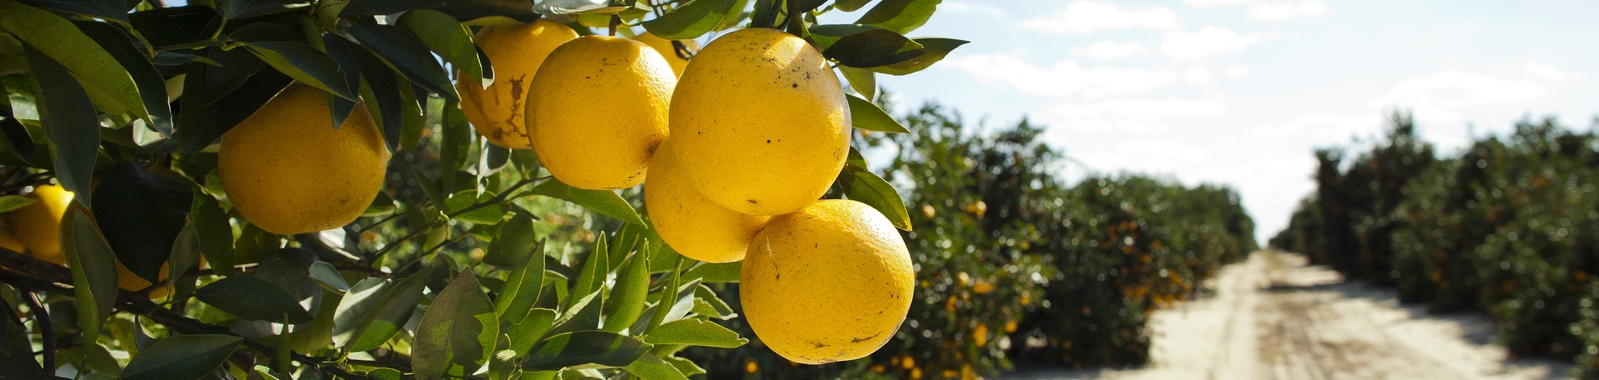 Close up of oranges in Florida